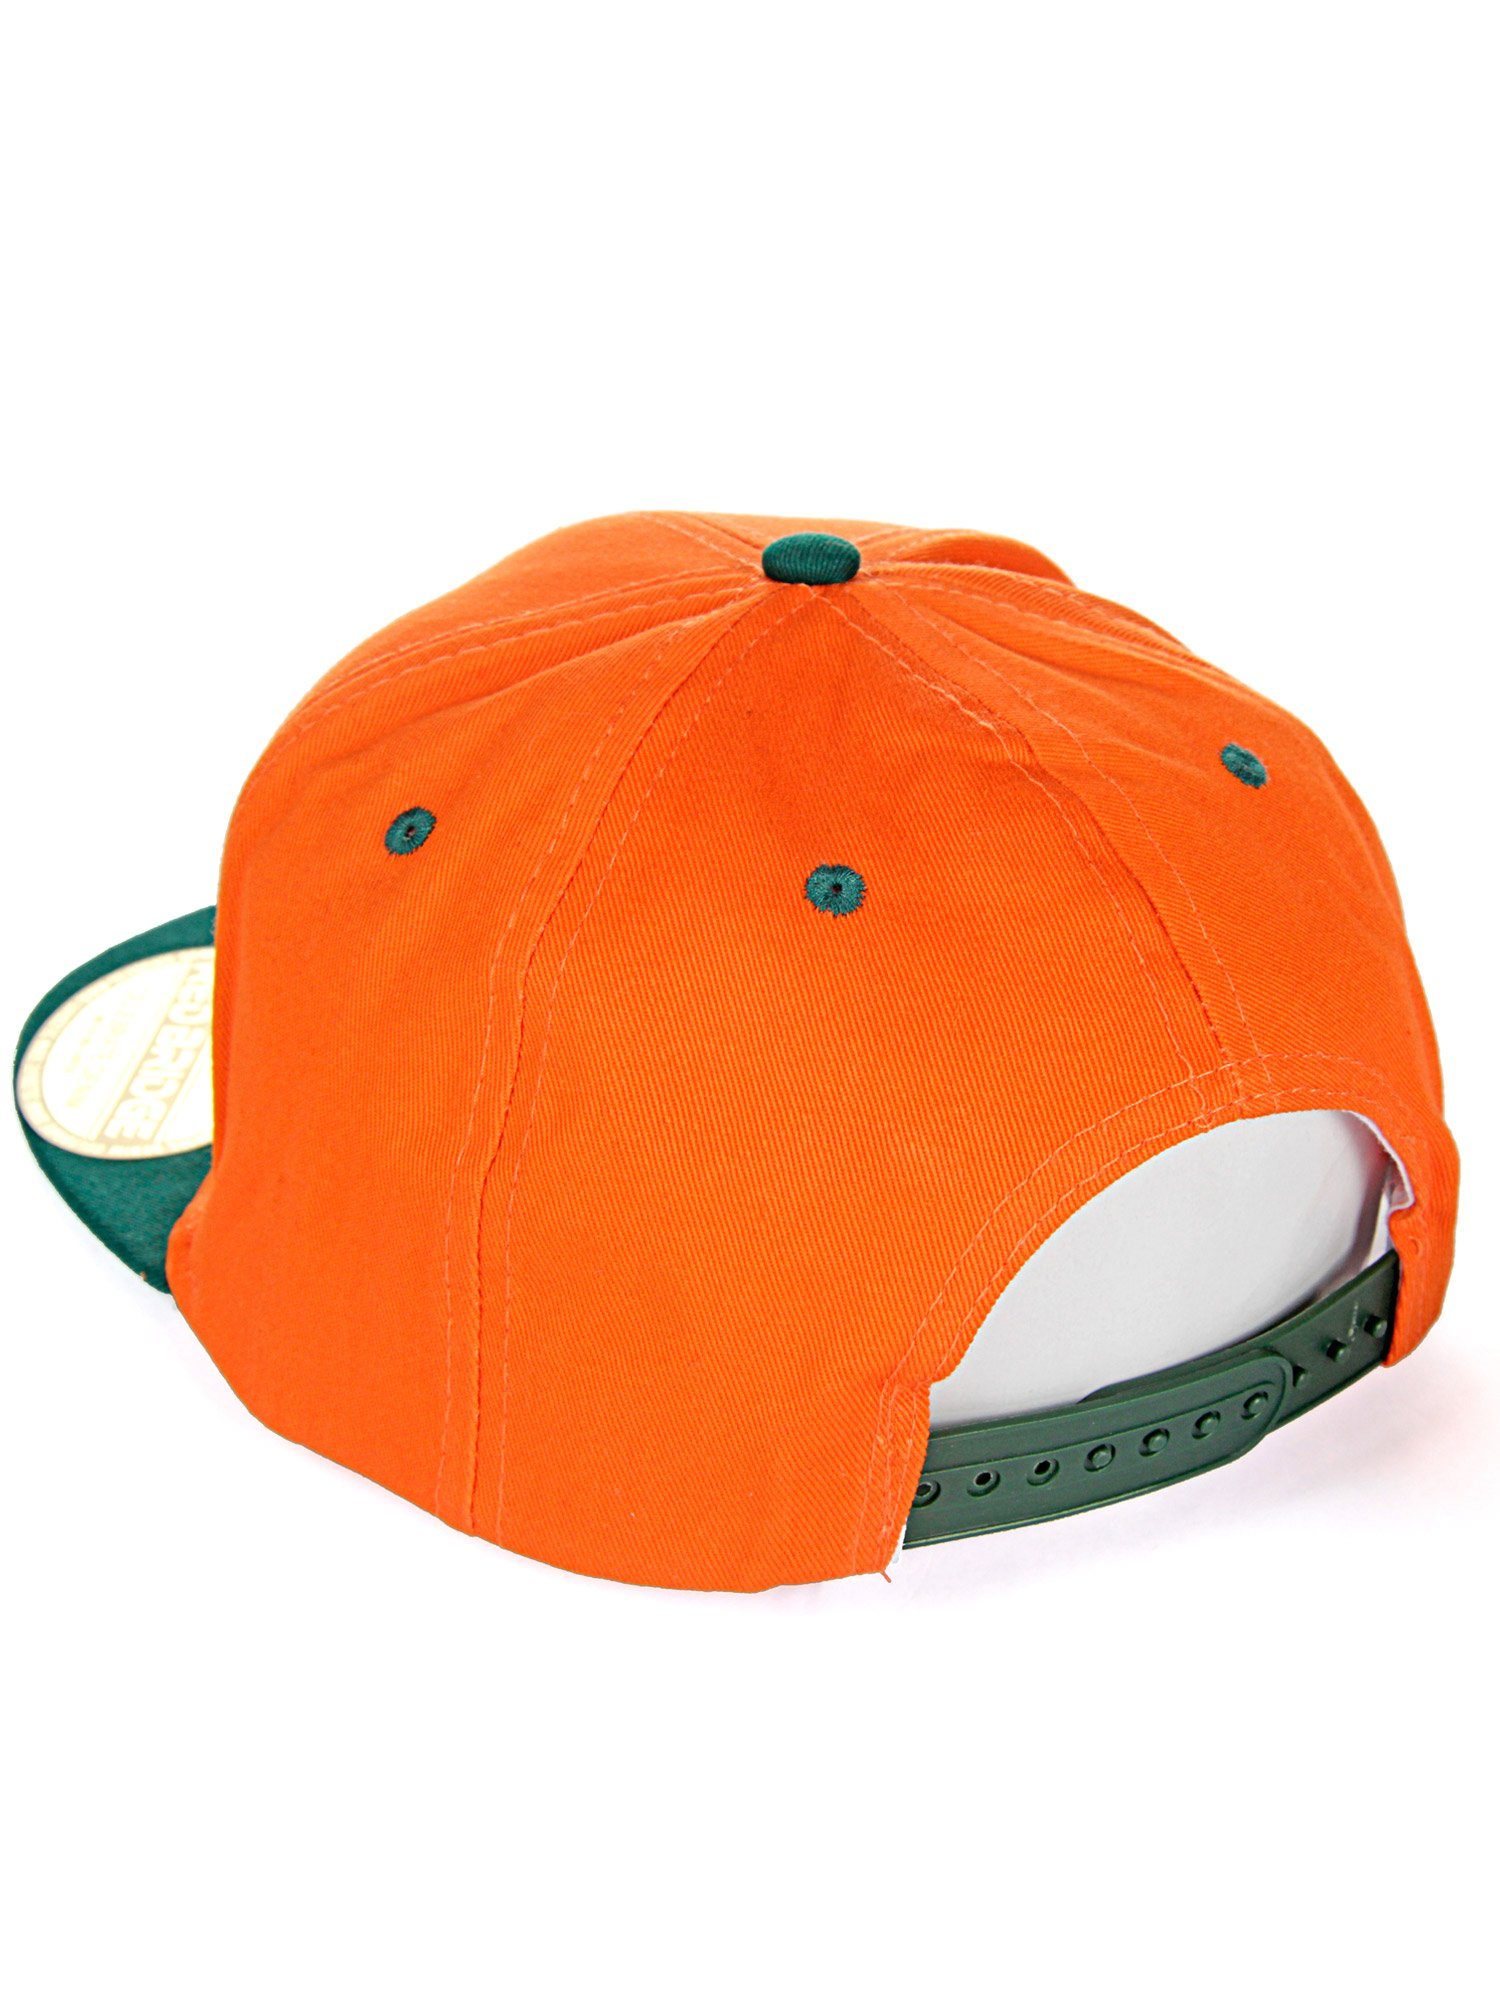 RedBridge Baseball Cap mit Druckverschluss orange-grün Wellingborough